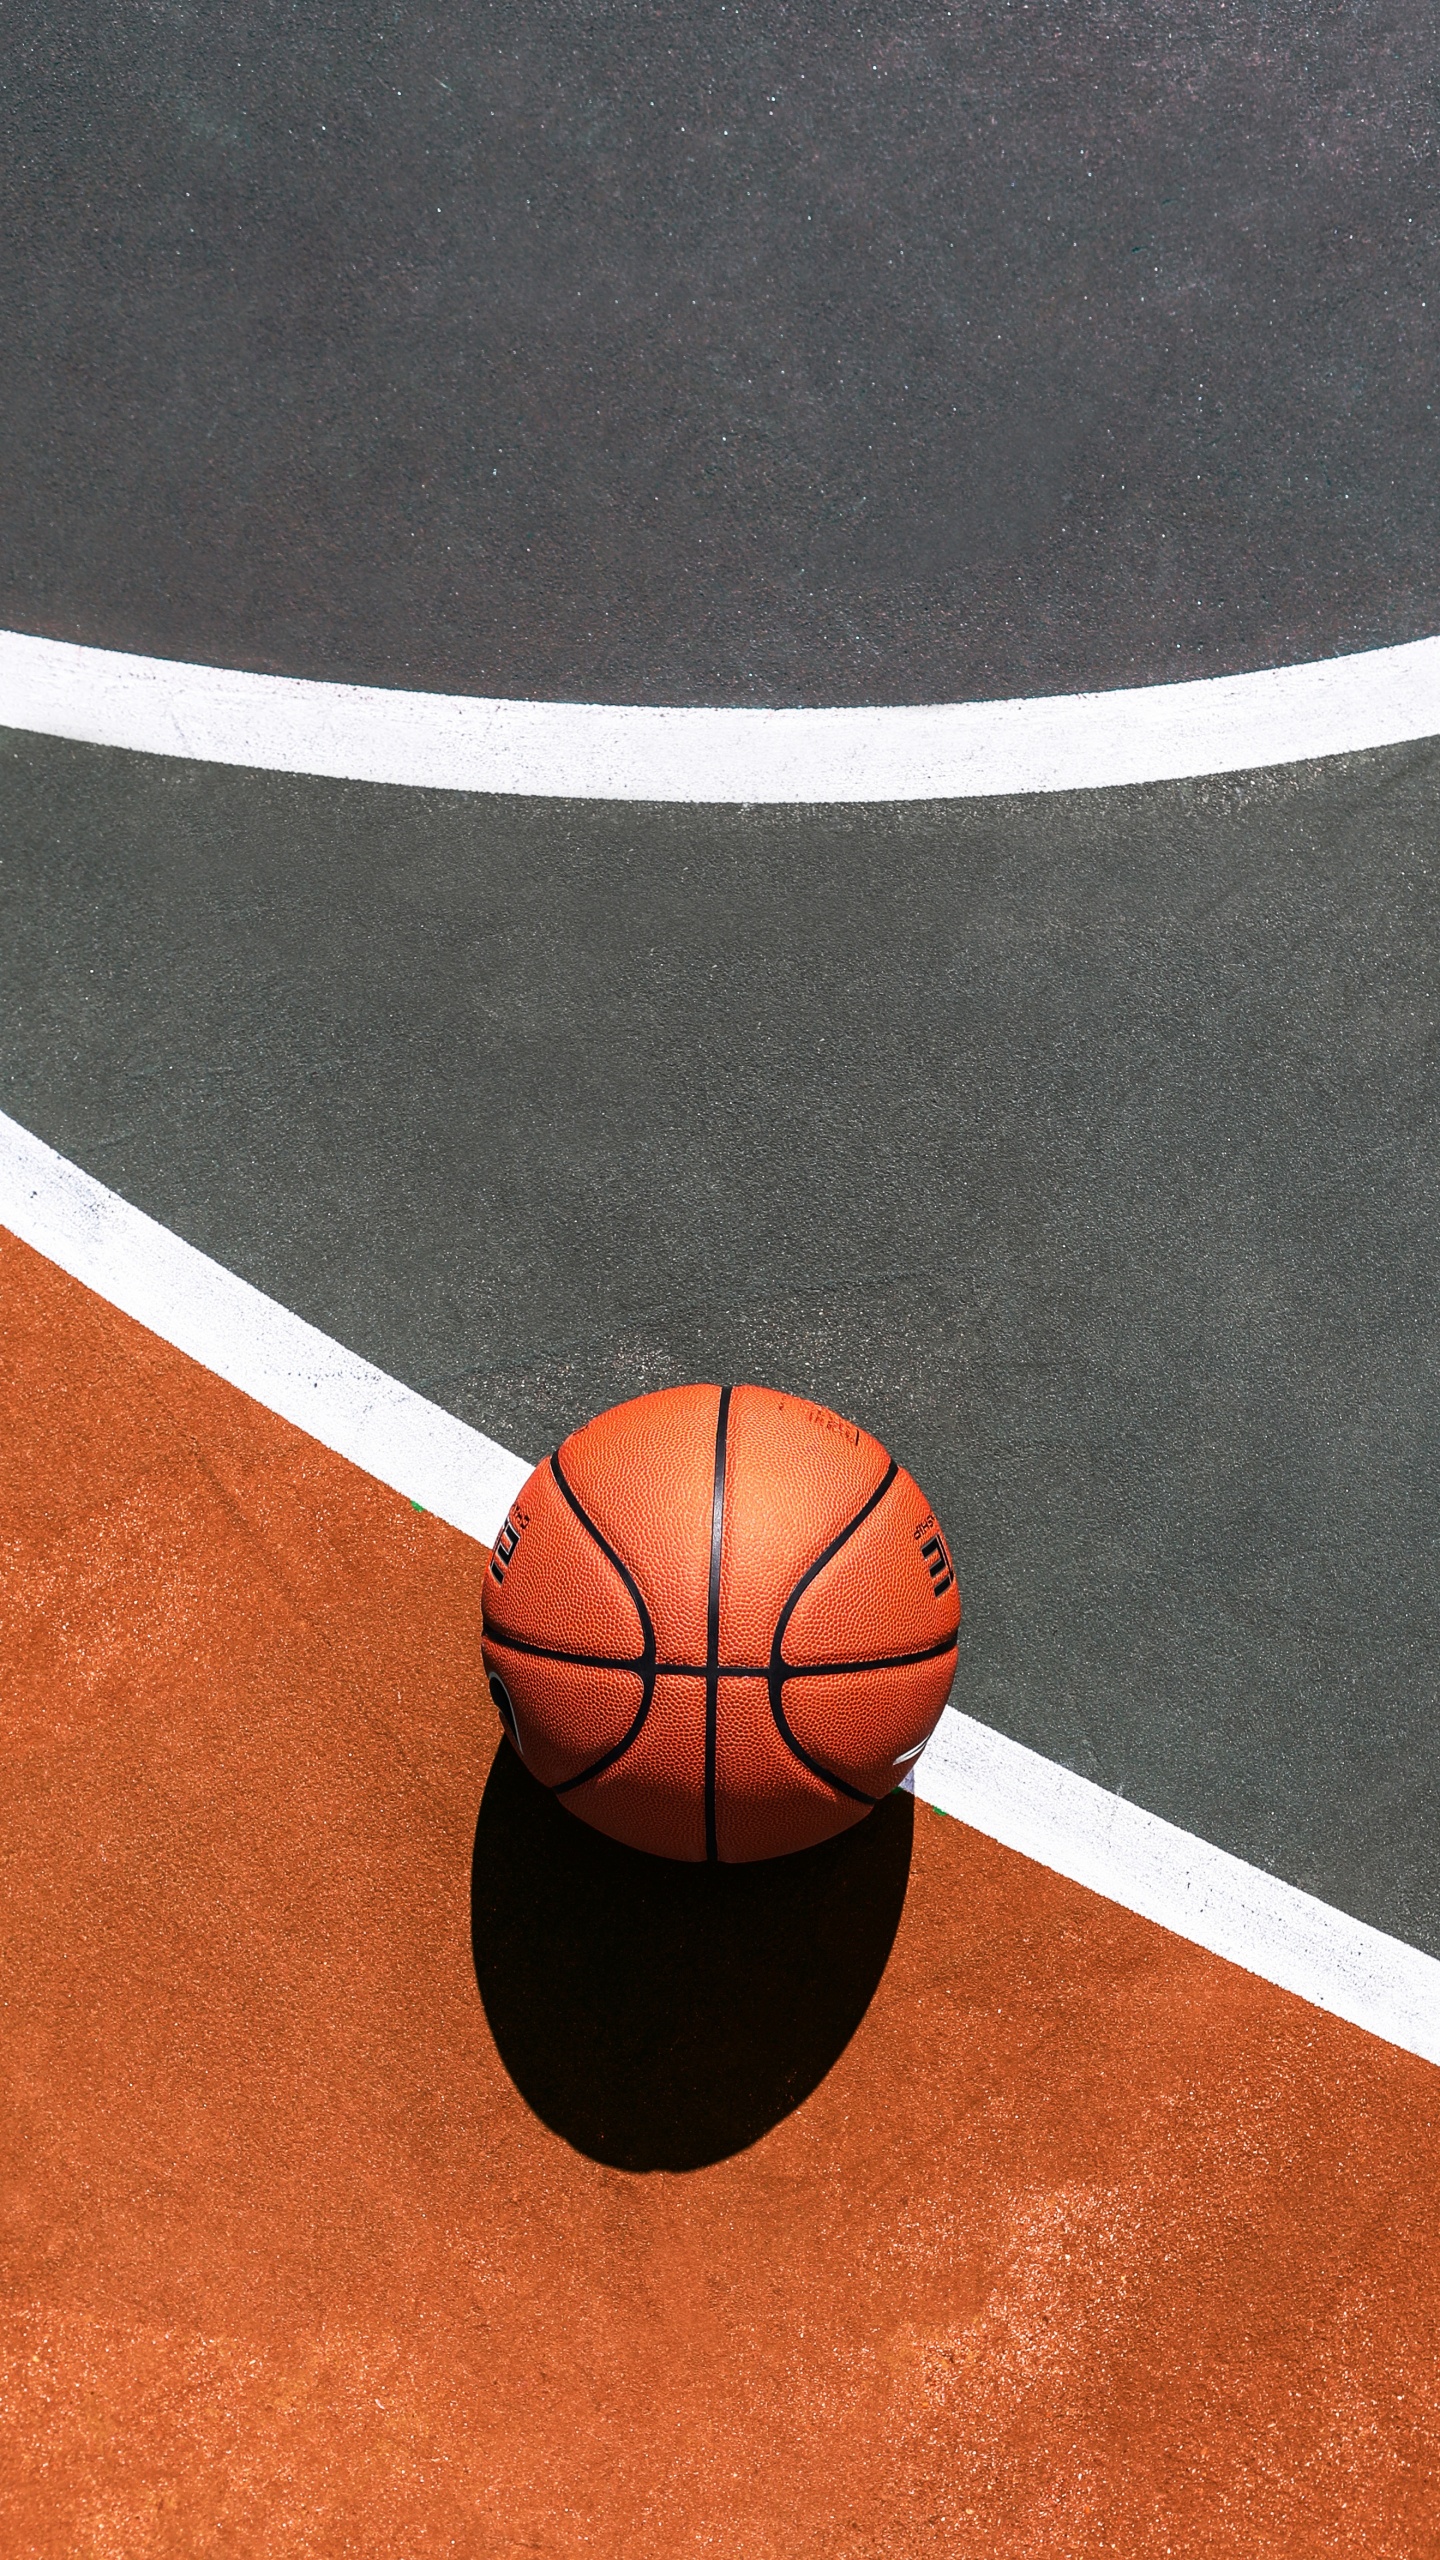 Basket-ball Sur un Terrain de Basket Bleu et Blanc. Wallpaper in 1440x2560 Resolution